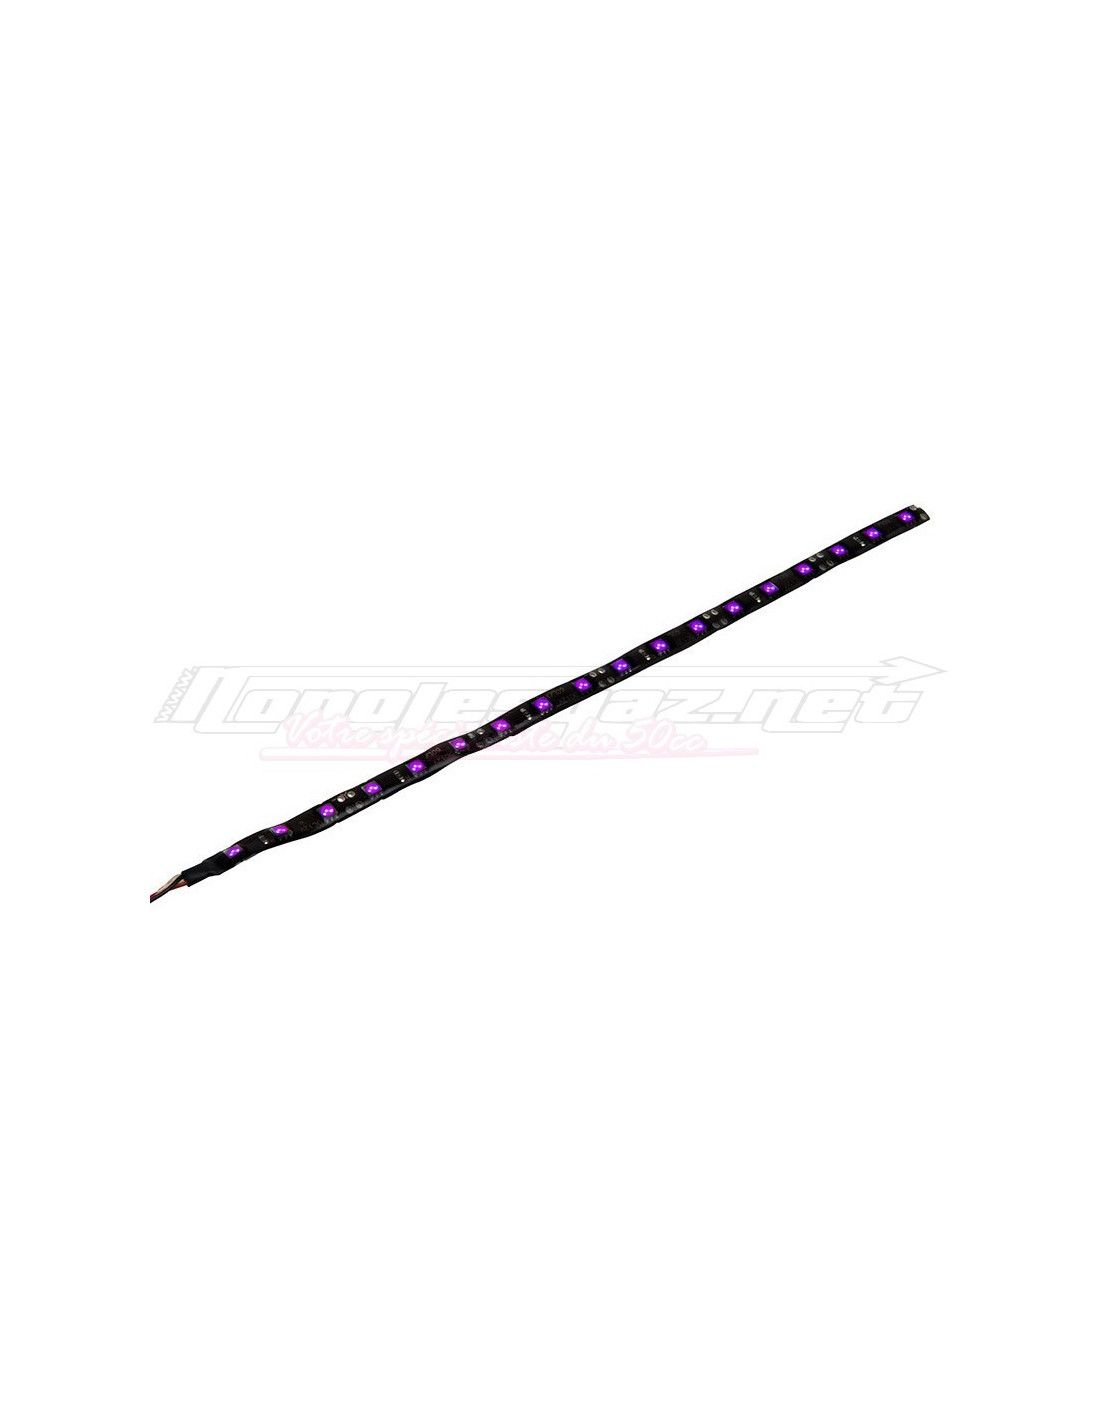 Bande néon ultra flexible et plate 30cm TUN'R 18 leds rose, violet, blanc,  bleu, orange, rouge ou vert